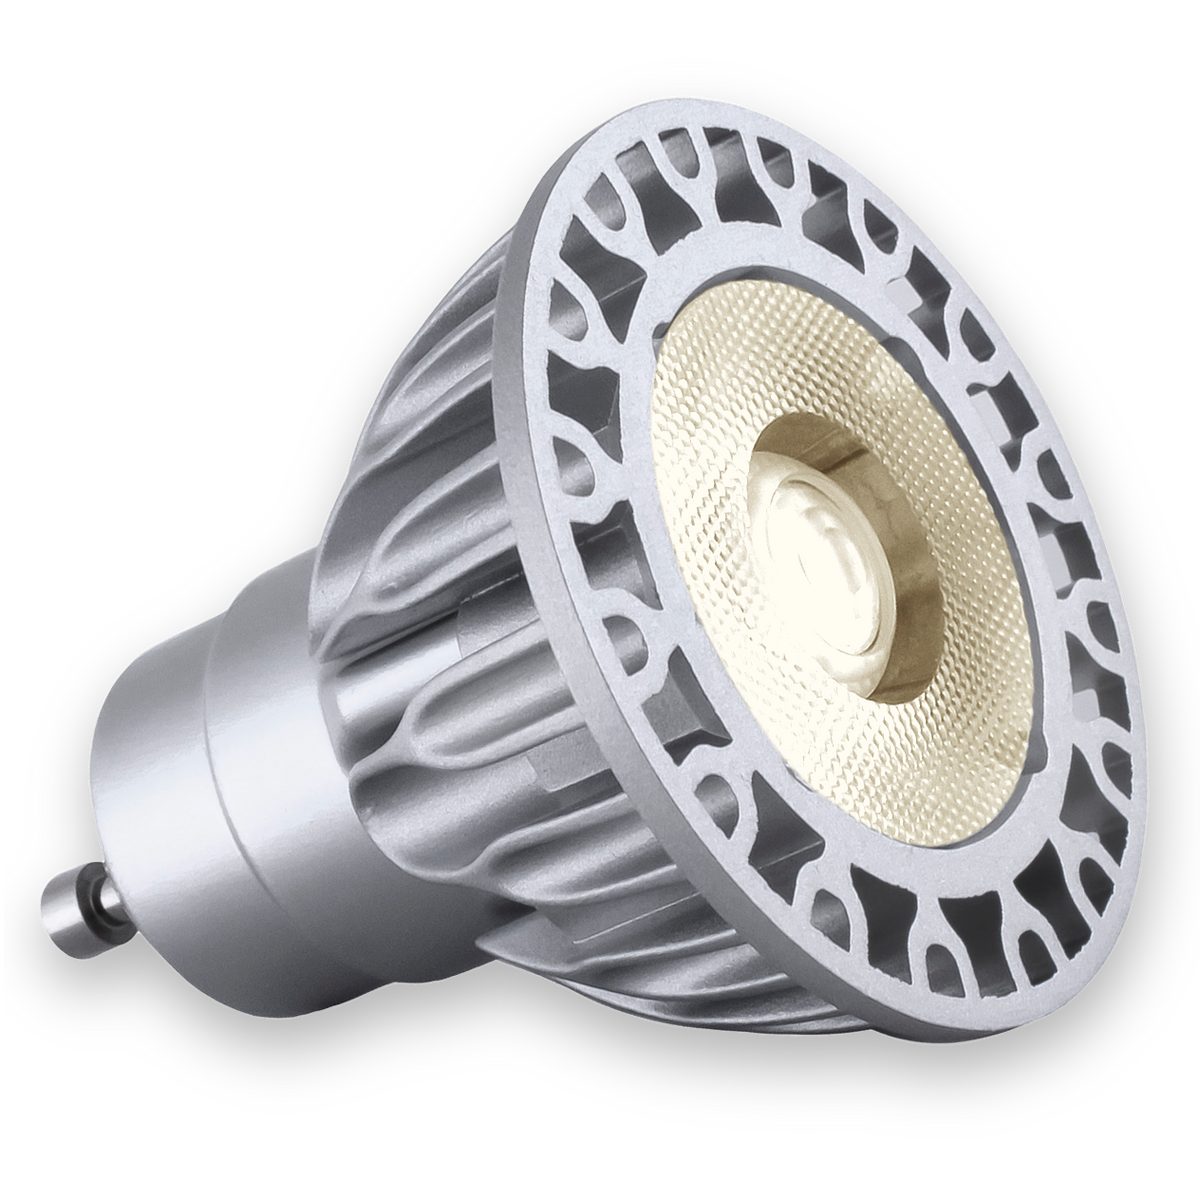 Soraa LED-Leuchtmittel Soraa Brilliant HL - MR16 GU10 - High Lumen LED - 7.5Watt, 25°, GU10, Warmton - wie Glühlampe, Hoher Farbwiedergabeindex CRI90+, hohe Effizienz